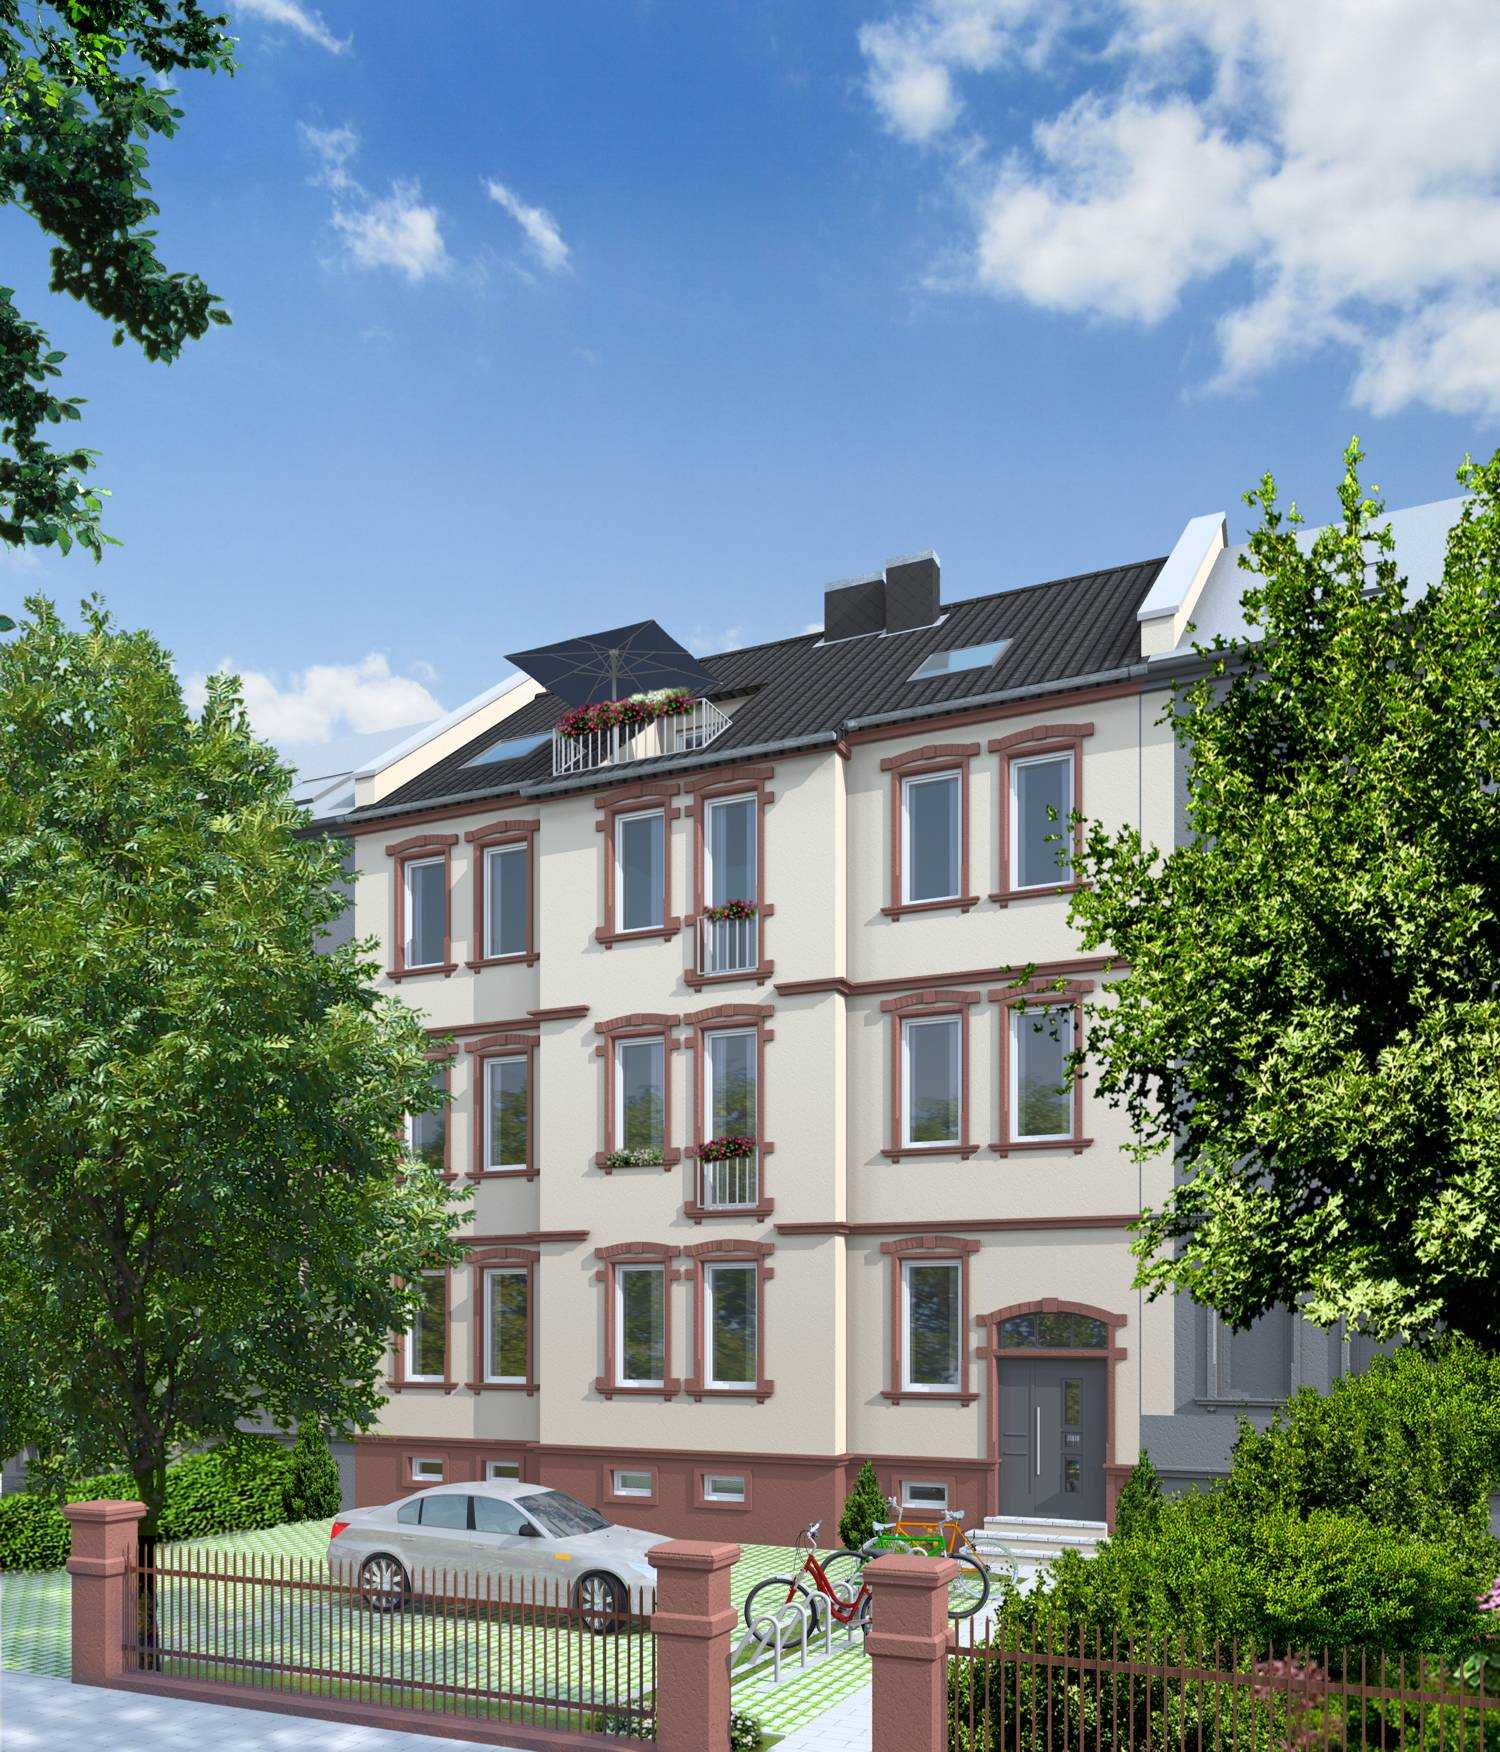 Architekturvisualisierung der Straßenfassade, Sanierung und Umbau Altbau-MFH in Frankfurter Landstraße 36, 63452 Hanau, für Burghardt Immobilien/Frankfurt am Main (2015)